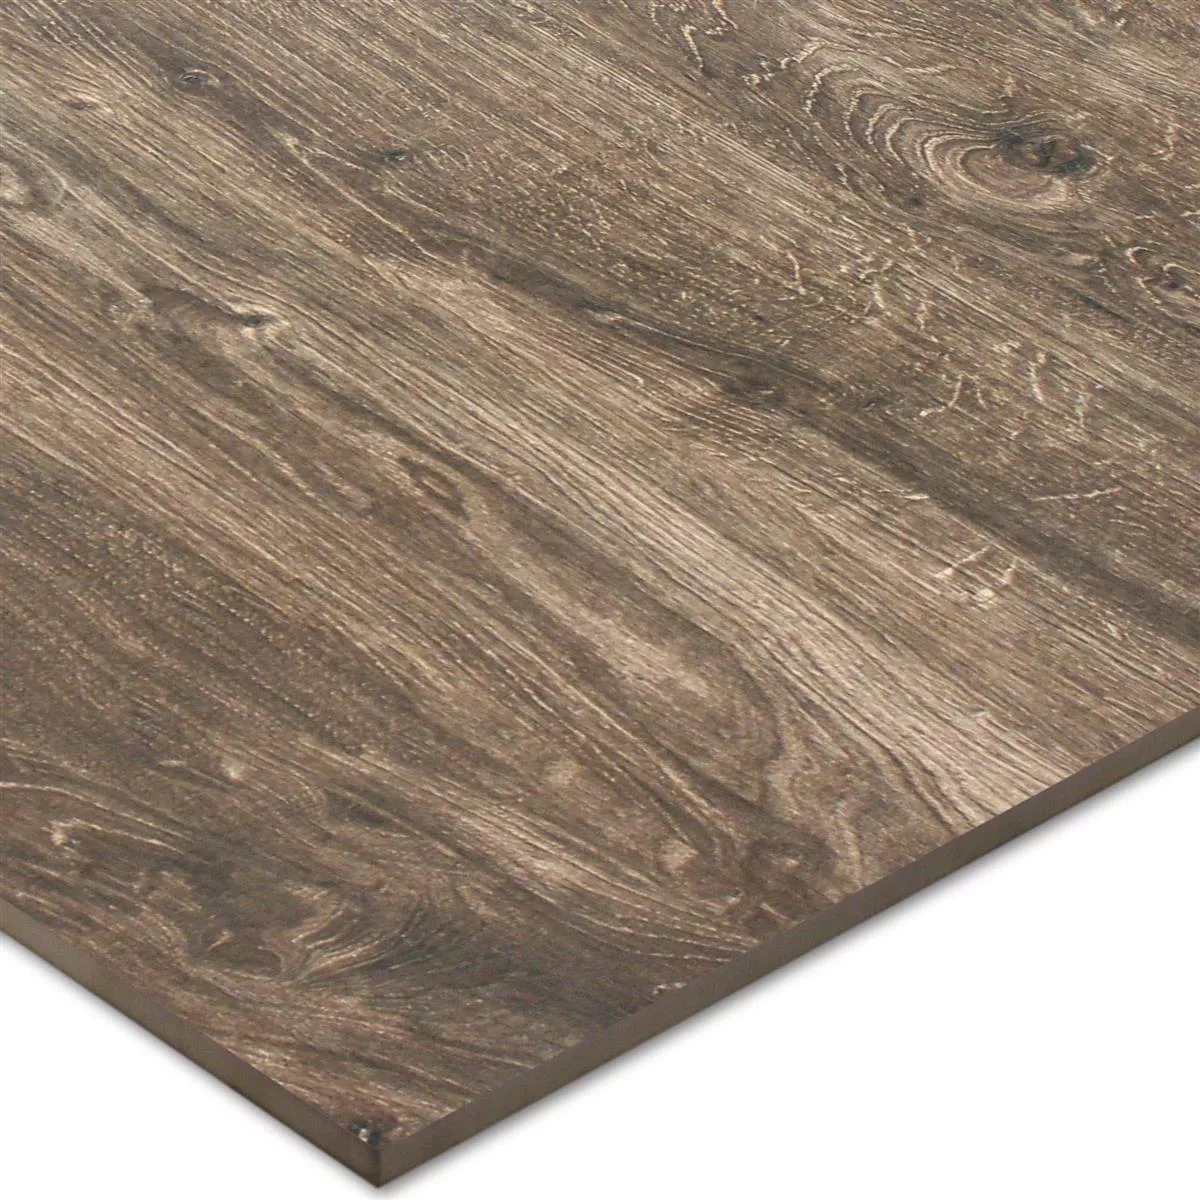 Sample Floor Tiles Wood Optic Tibet Dark Brown 60x120cm